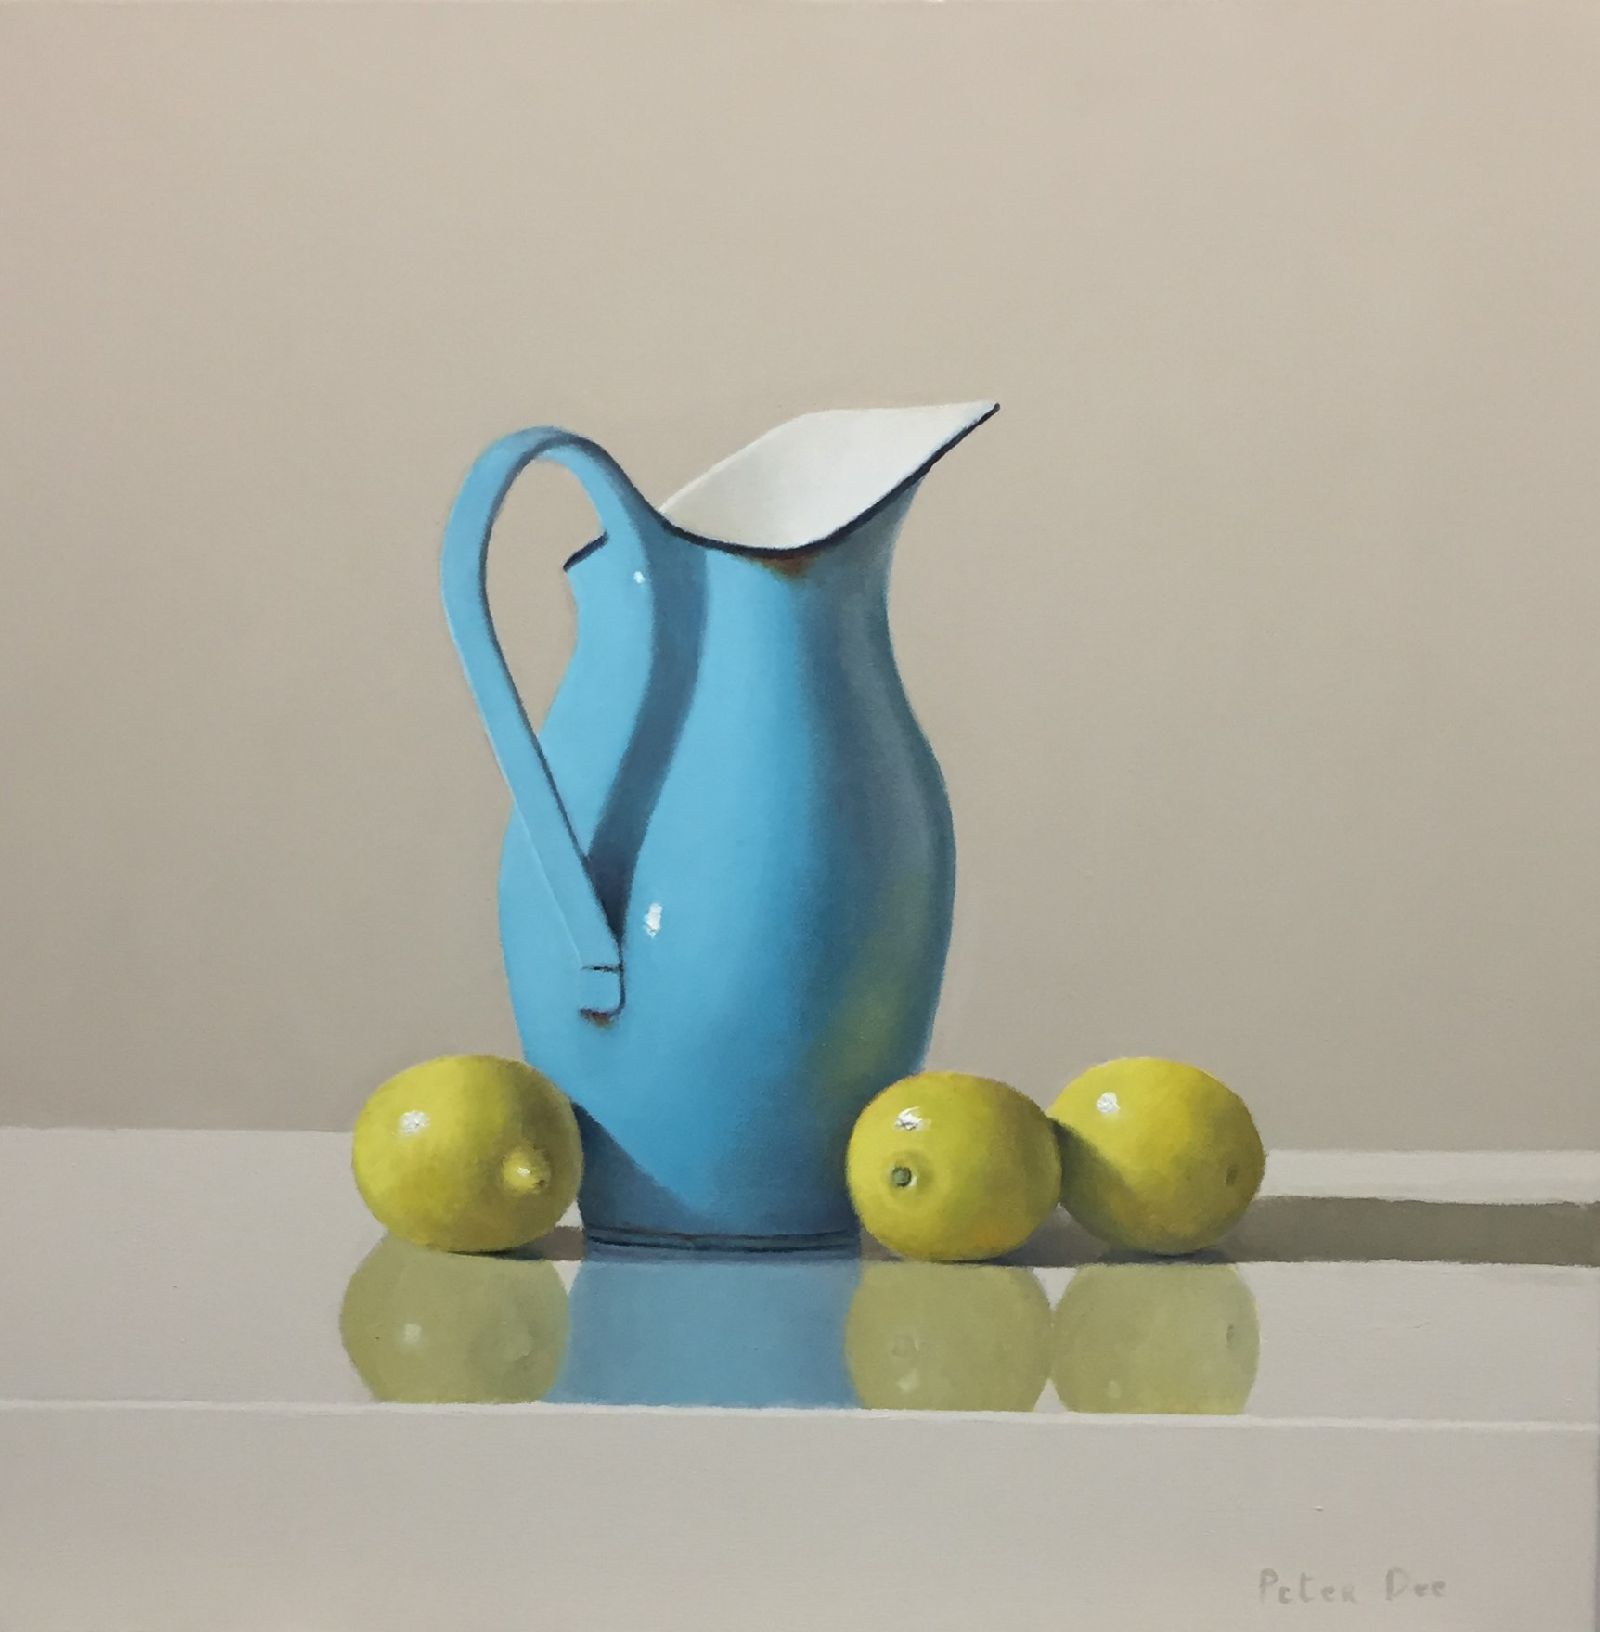 Peter Dee - Turquise Enamelware with Lemons